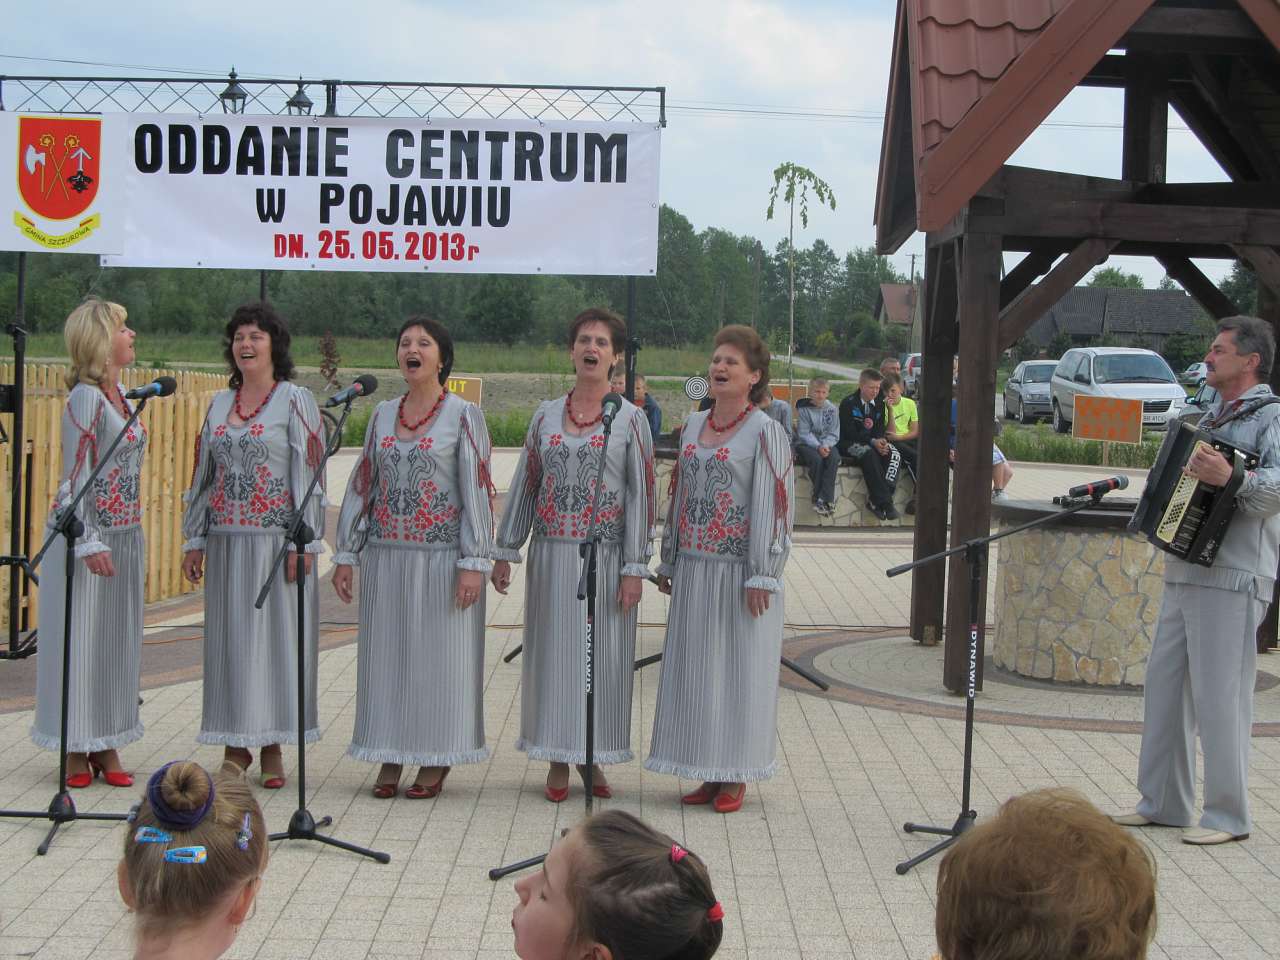 Саджавці в Польщі 25.05.2013 - Петро Середюк